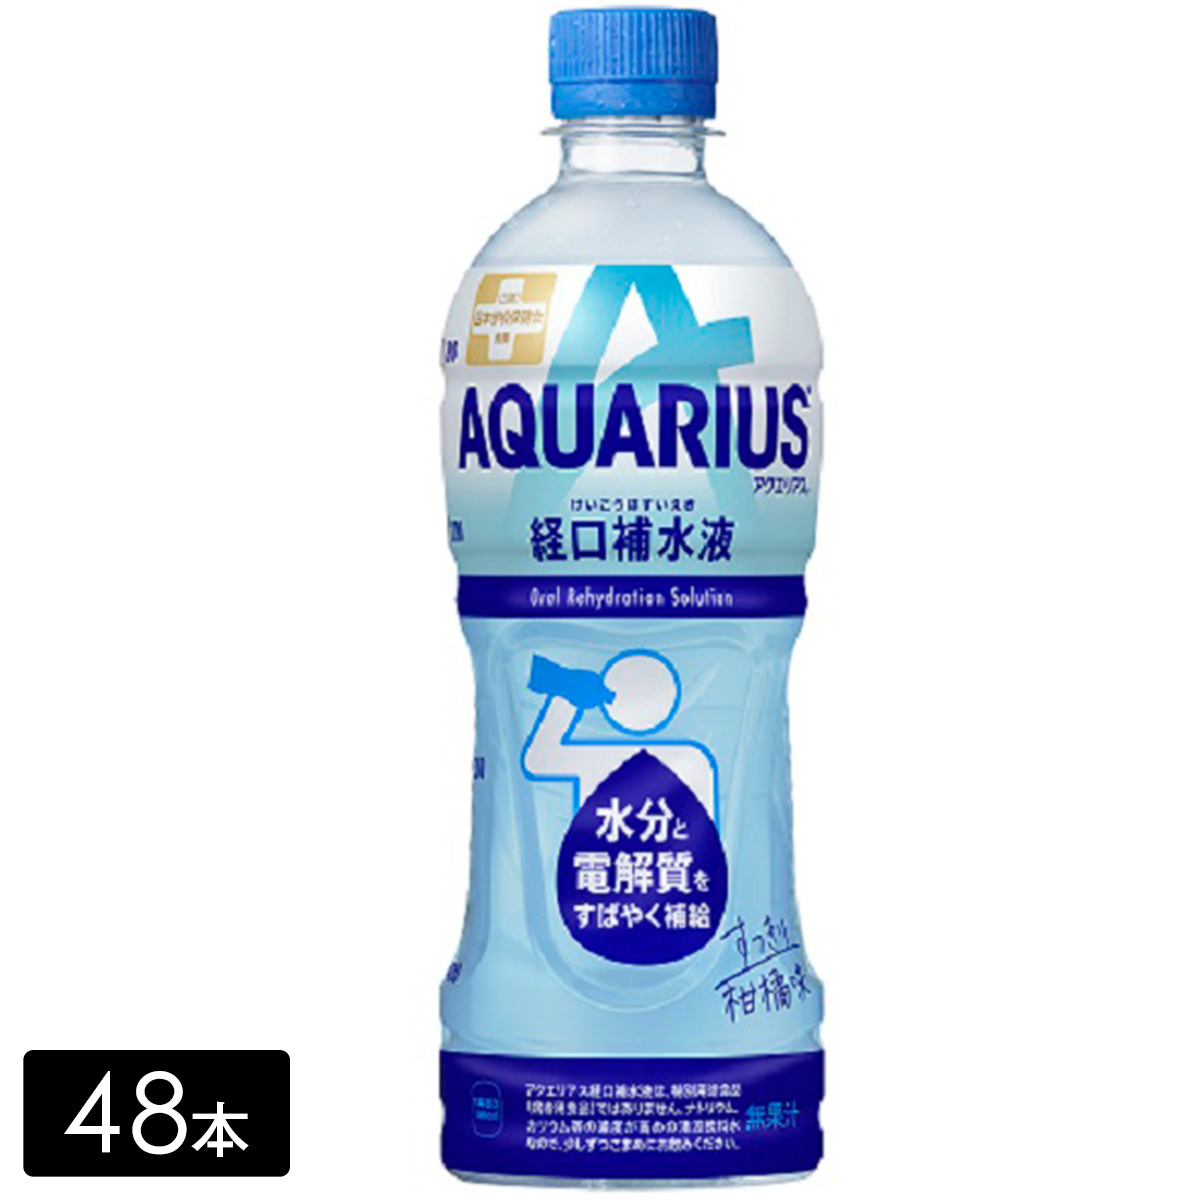 [送料無料]アクエリアス経口補水液 500mL×48本(24本×2箱) 水分補給 カロリーひかえめ AQUARIUS ペットボトル ケース売り まとめ買い